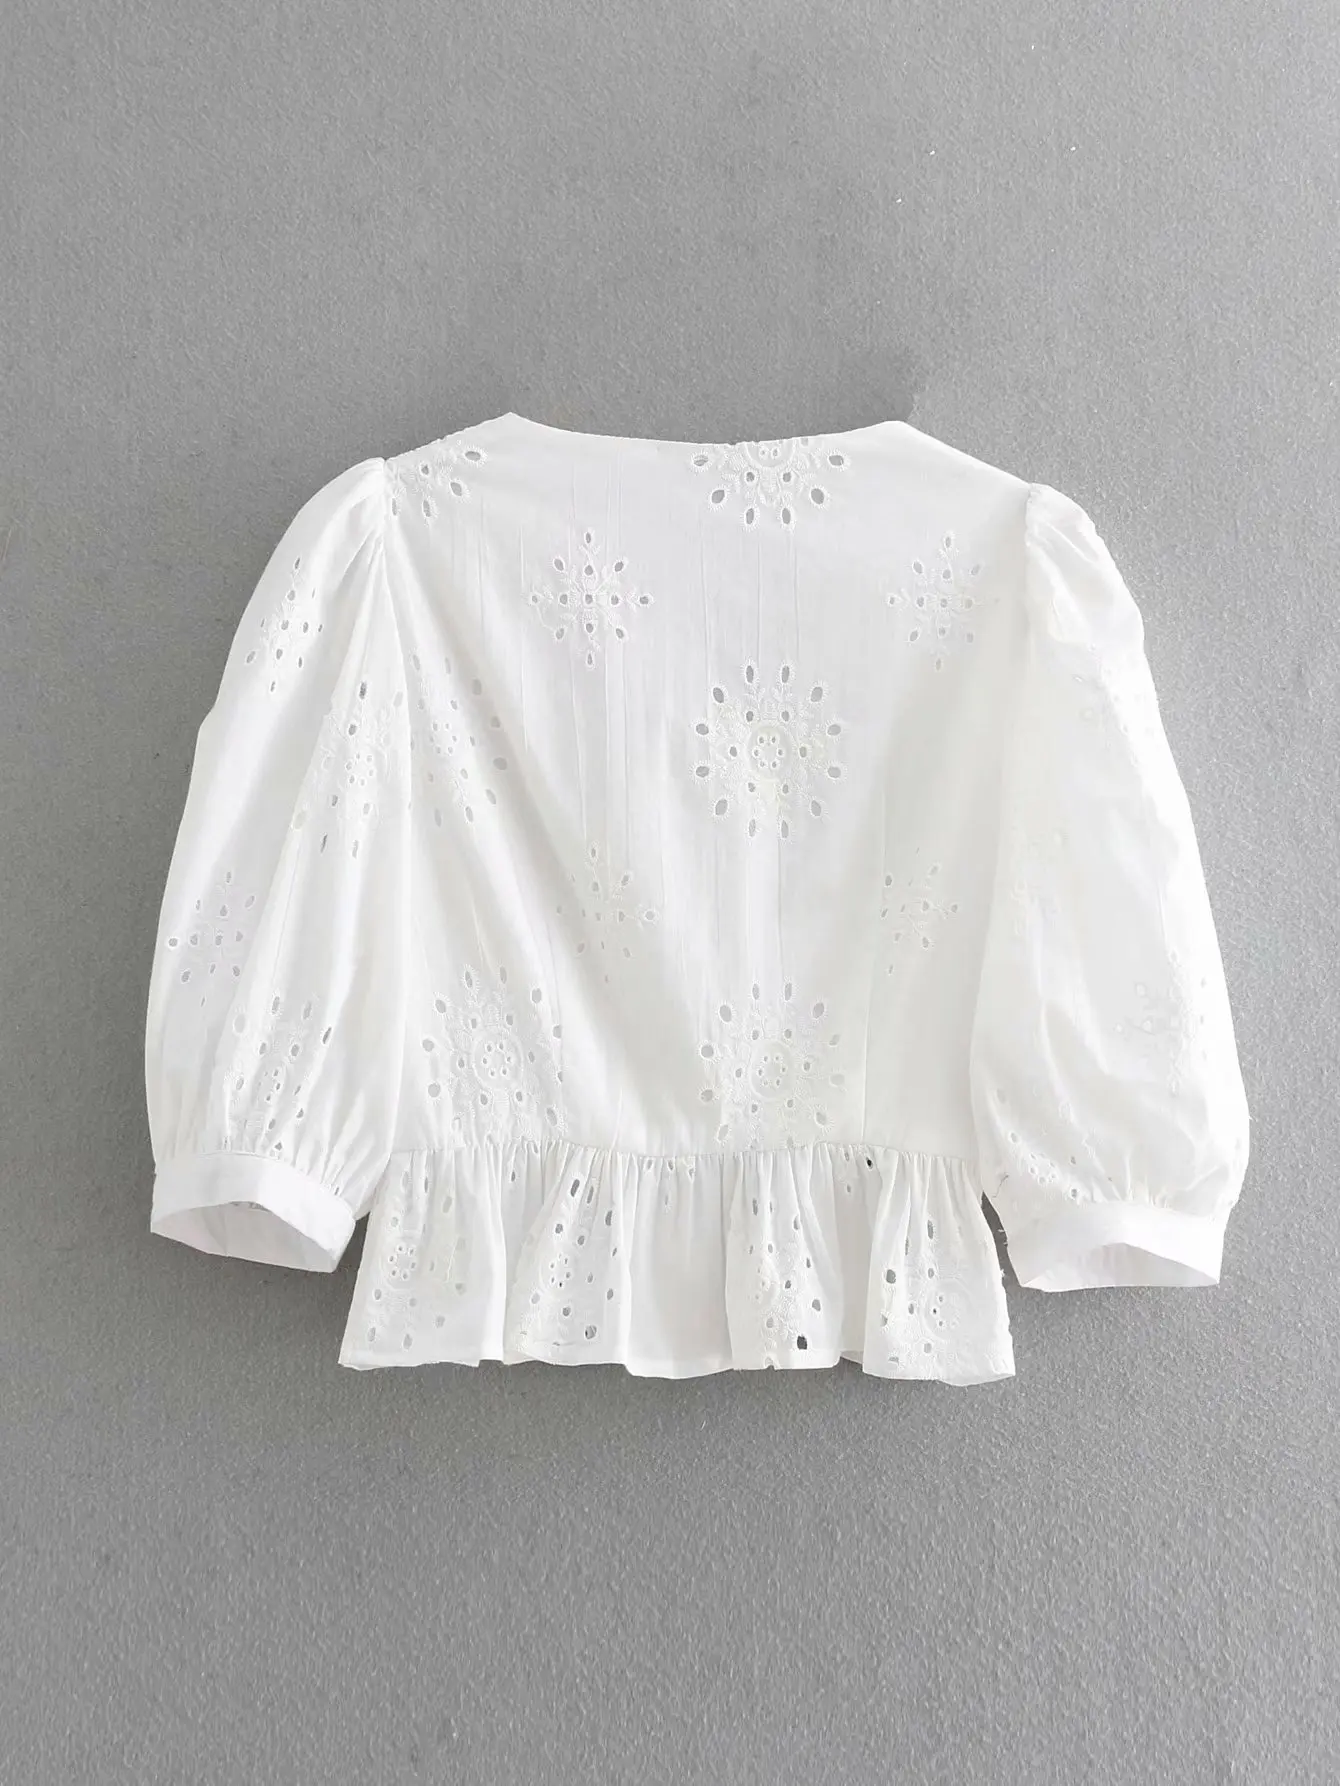 Новое поступление 9157, Европейская и американская мода, вышитая рубашка на пуговицах, белая женская рубашка, блузка, Женская модная рубашка